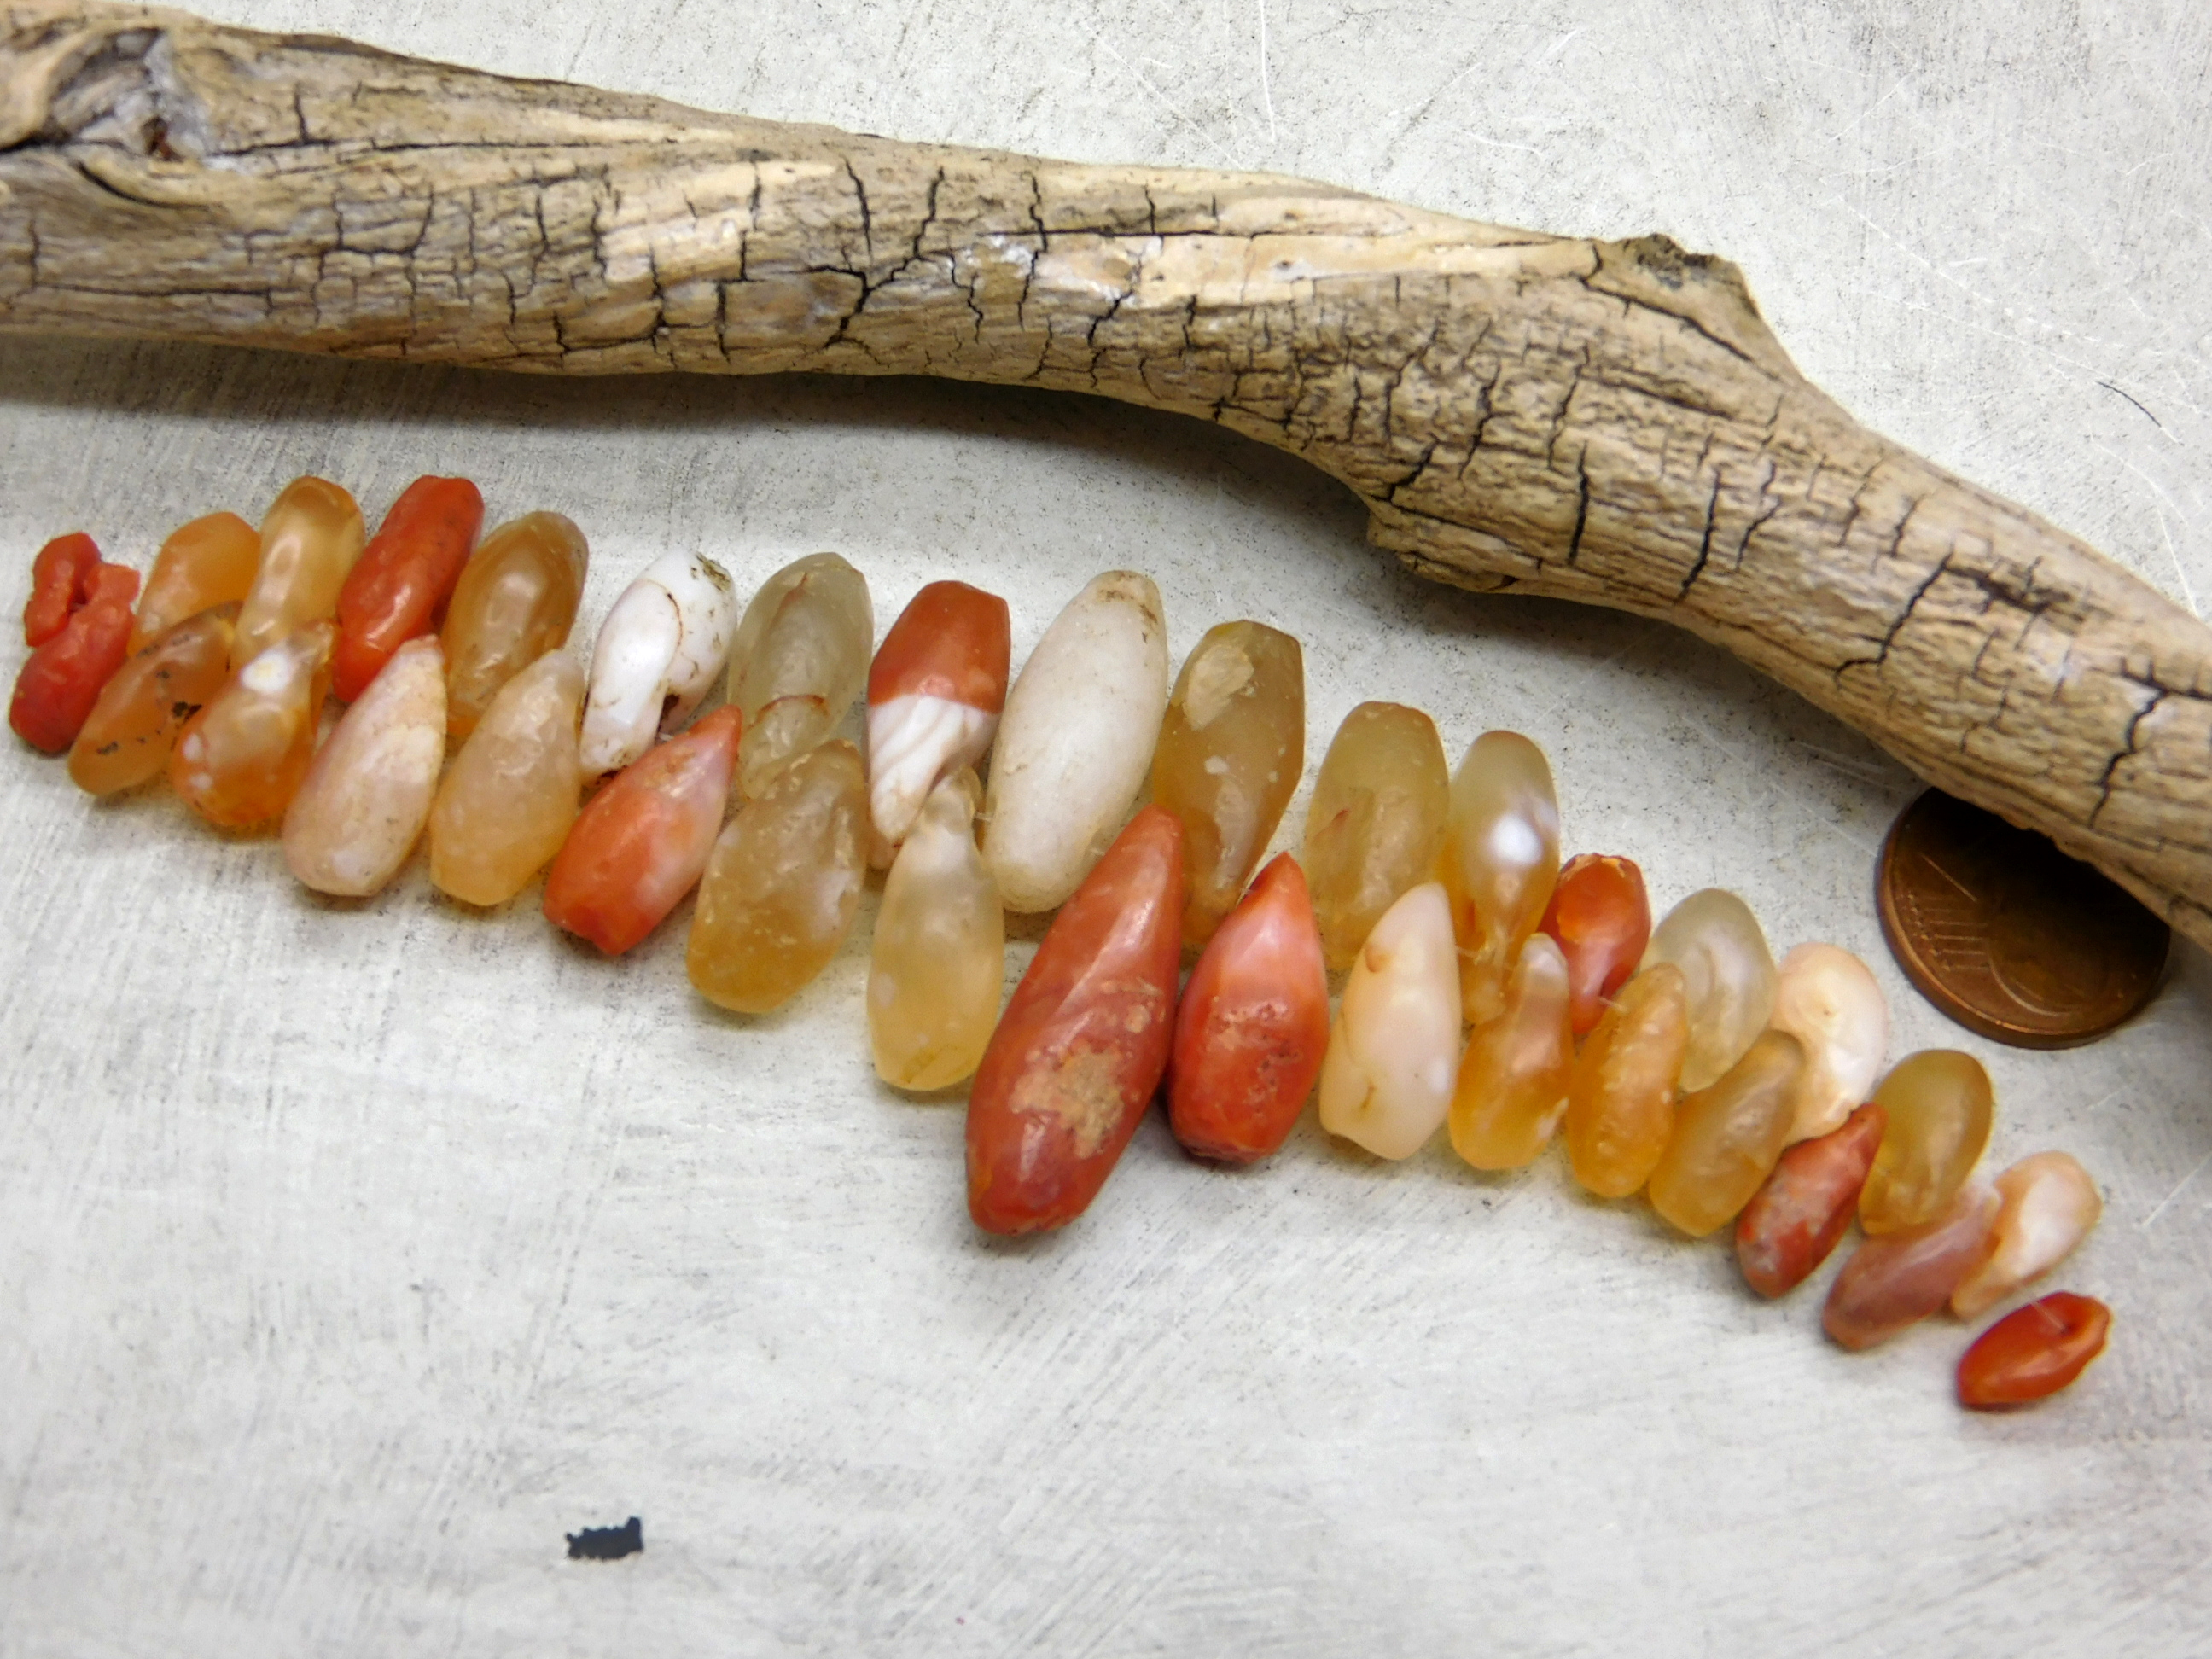 34 kleine antike Stein-Anhänger aus der Sahara - Karneol,Achat,Jaspis,Quarz - sehr selten - Tropfen Zähne